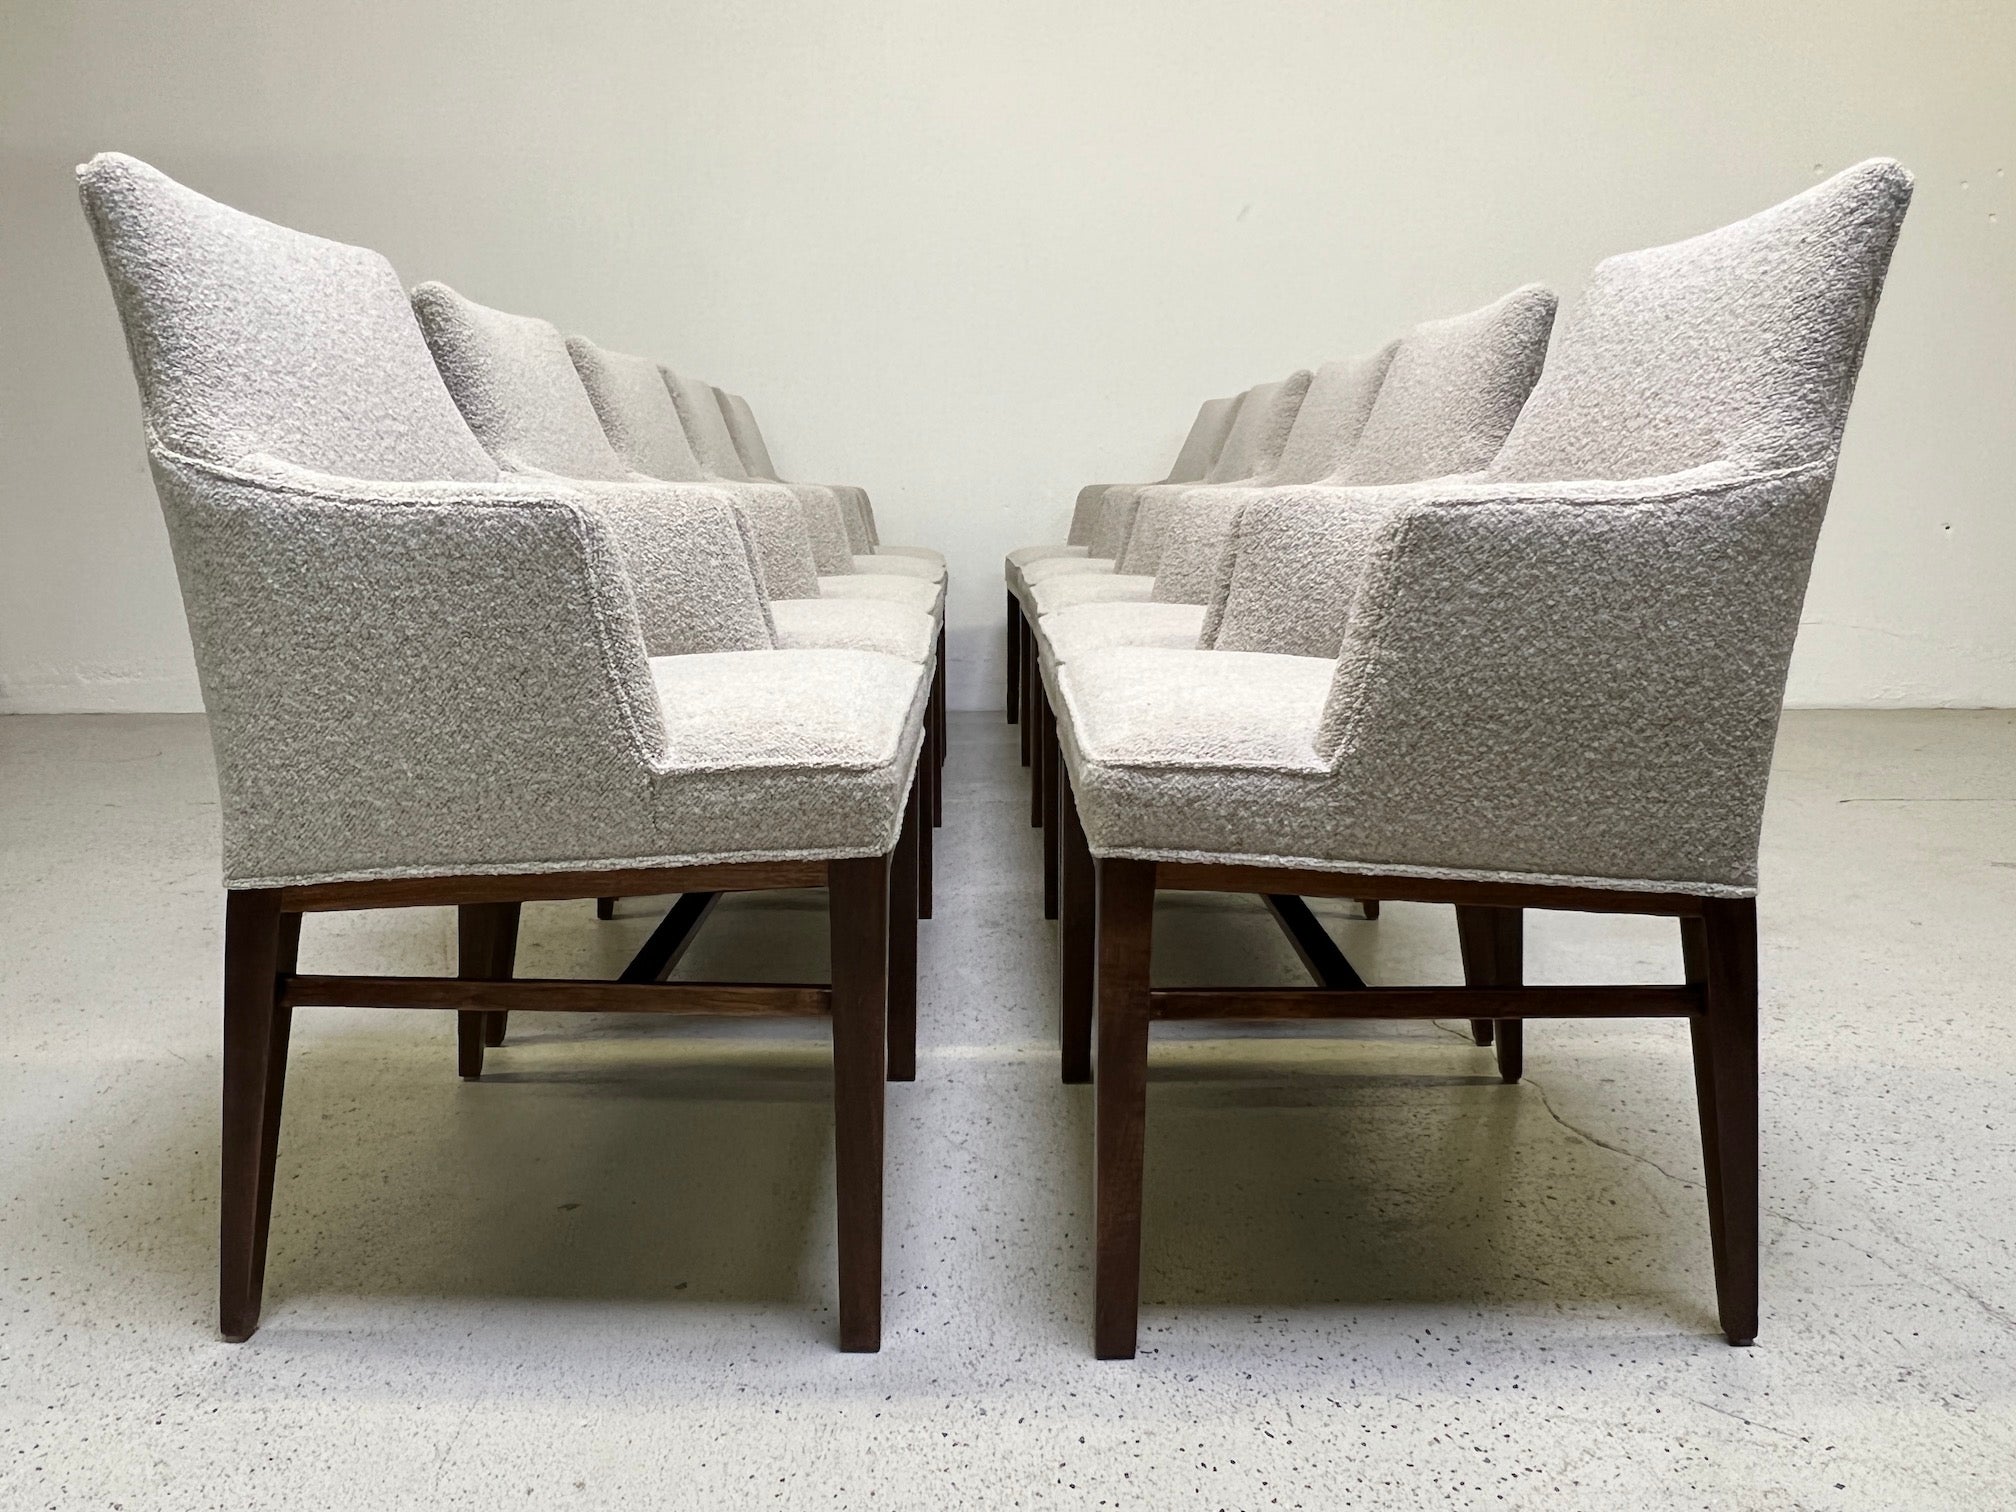 Ein seltener Satz von zehn Sesseln, entworfen von Edward Wormley für Dunbar. Vollständig restauriert mit aufgearbeiteten Nussbaumsockeln und gepolstert mit Designtex/Lambert-Stoff.